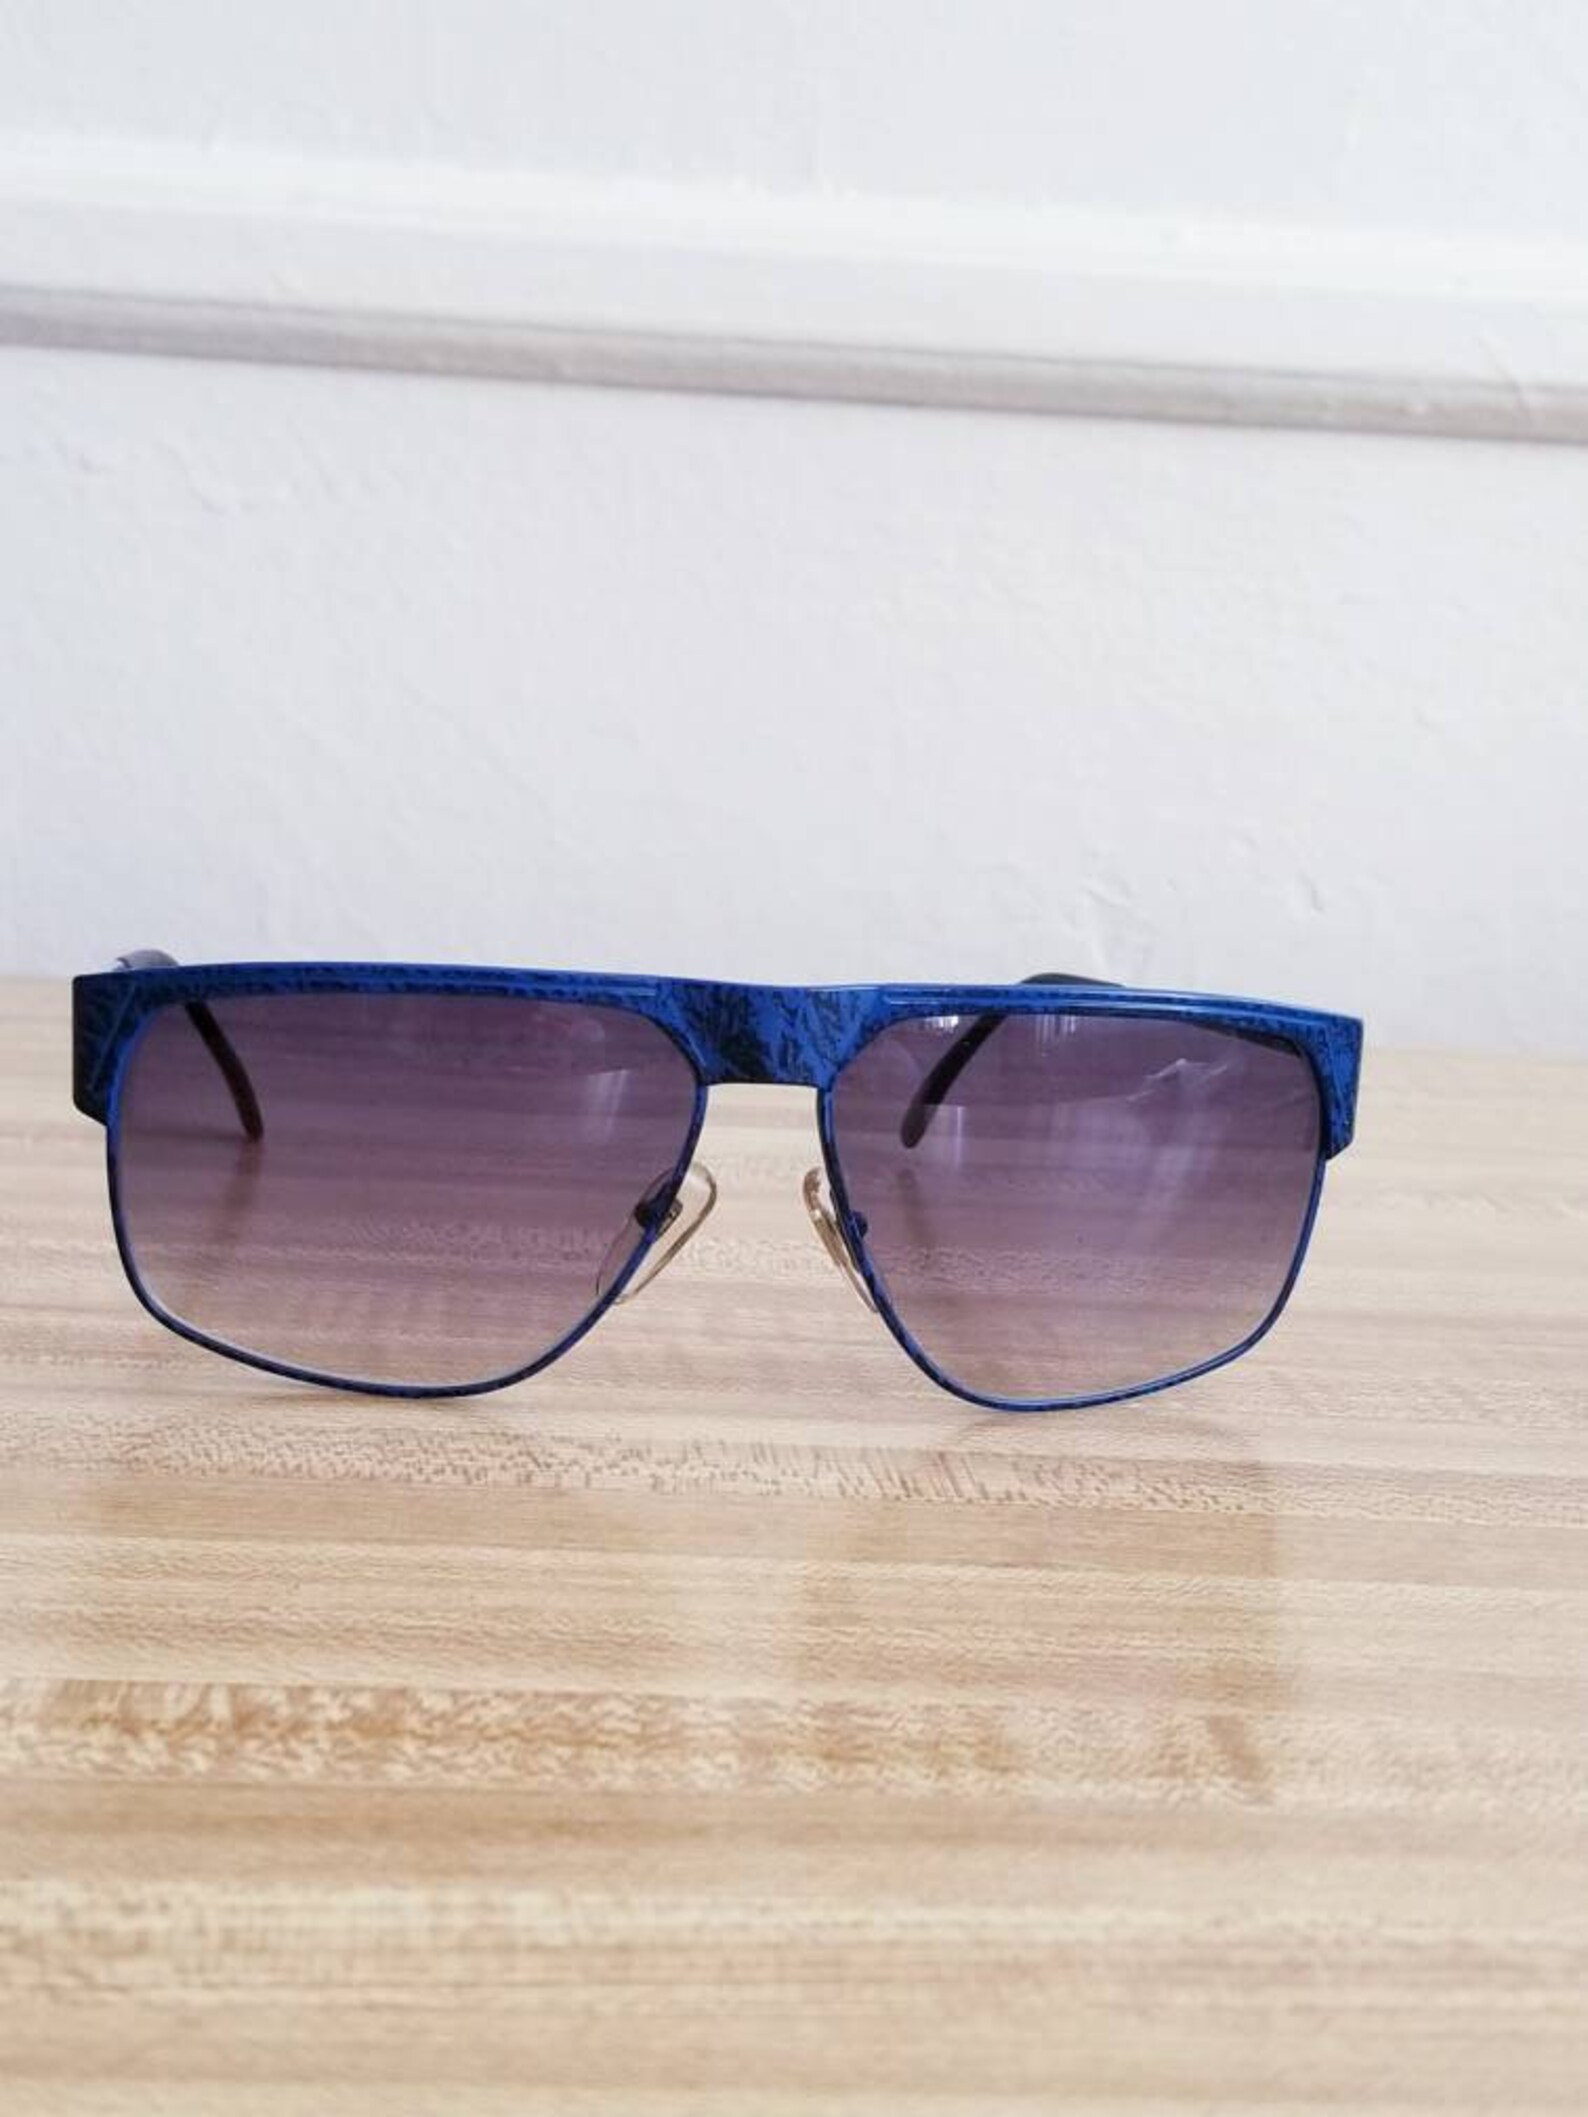 Jean-louis Scherrer Paris Junon Vintage Sunglasses 1980s Blue/ Brown ...